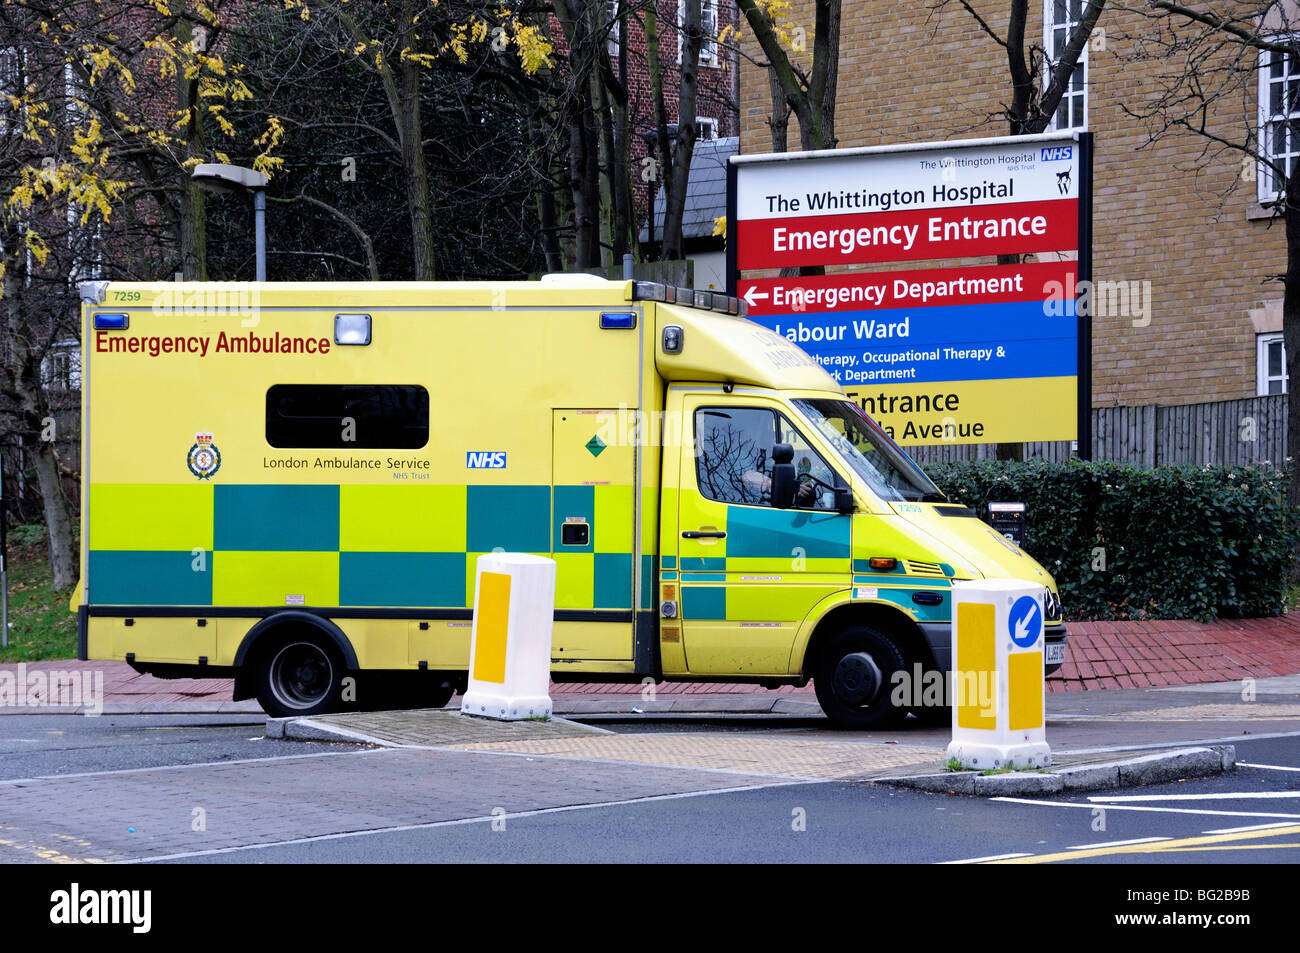 Londra Incidente ed Emergenza ambulanza lasciando il Whittington Hospital Highgate Hill Archway Islington England Regno Unito Foto Stock